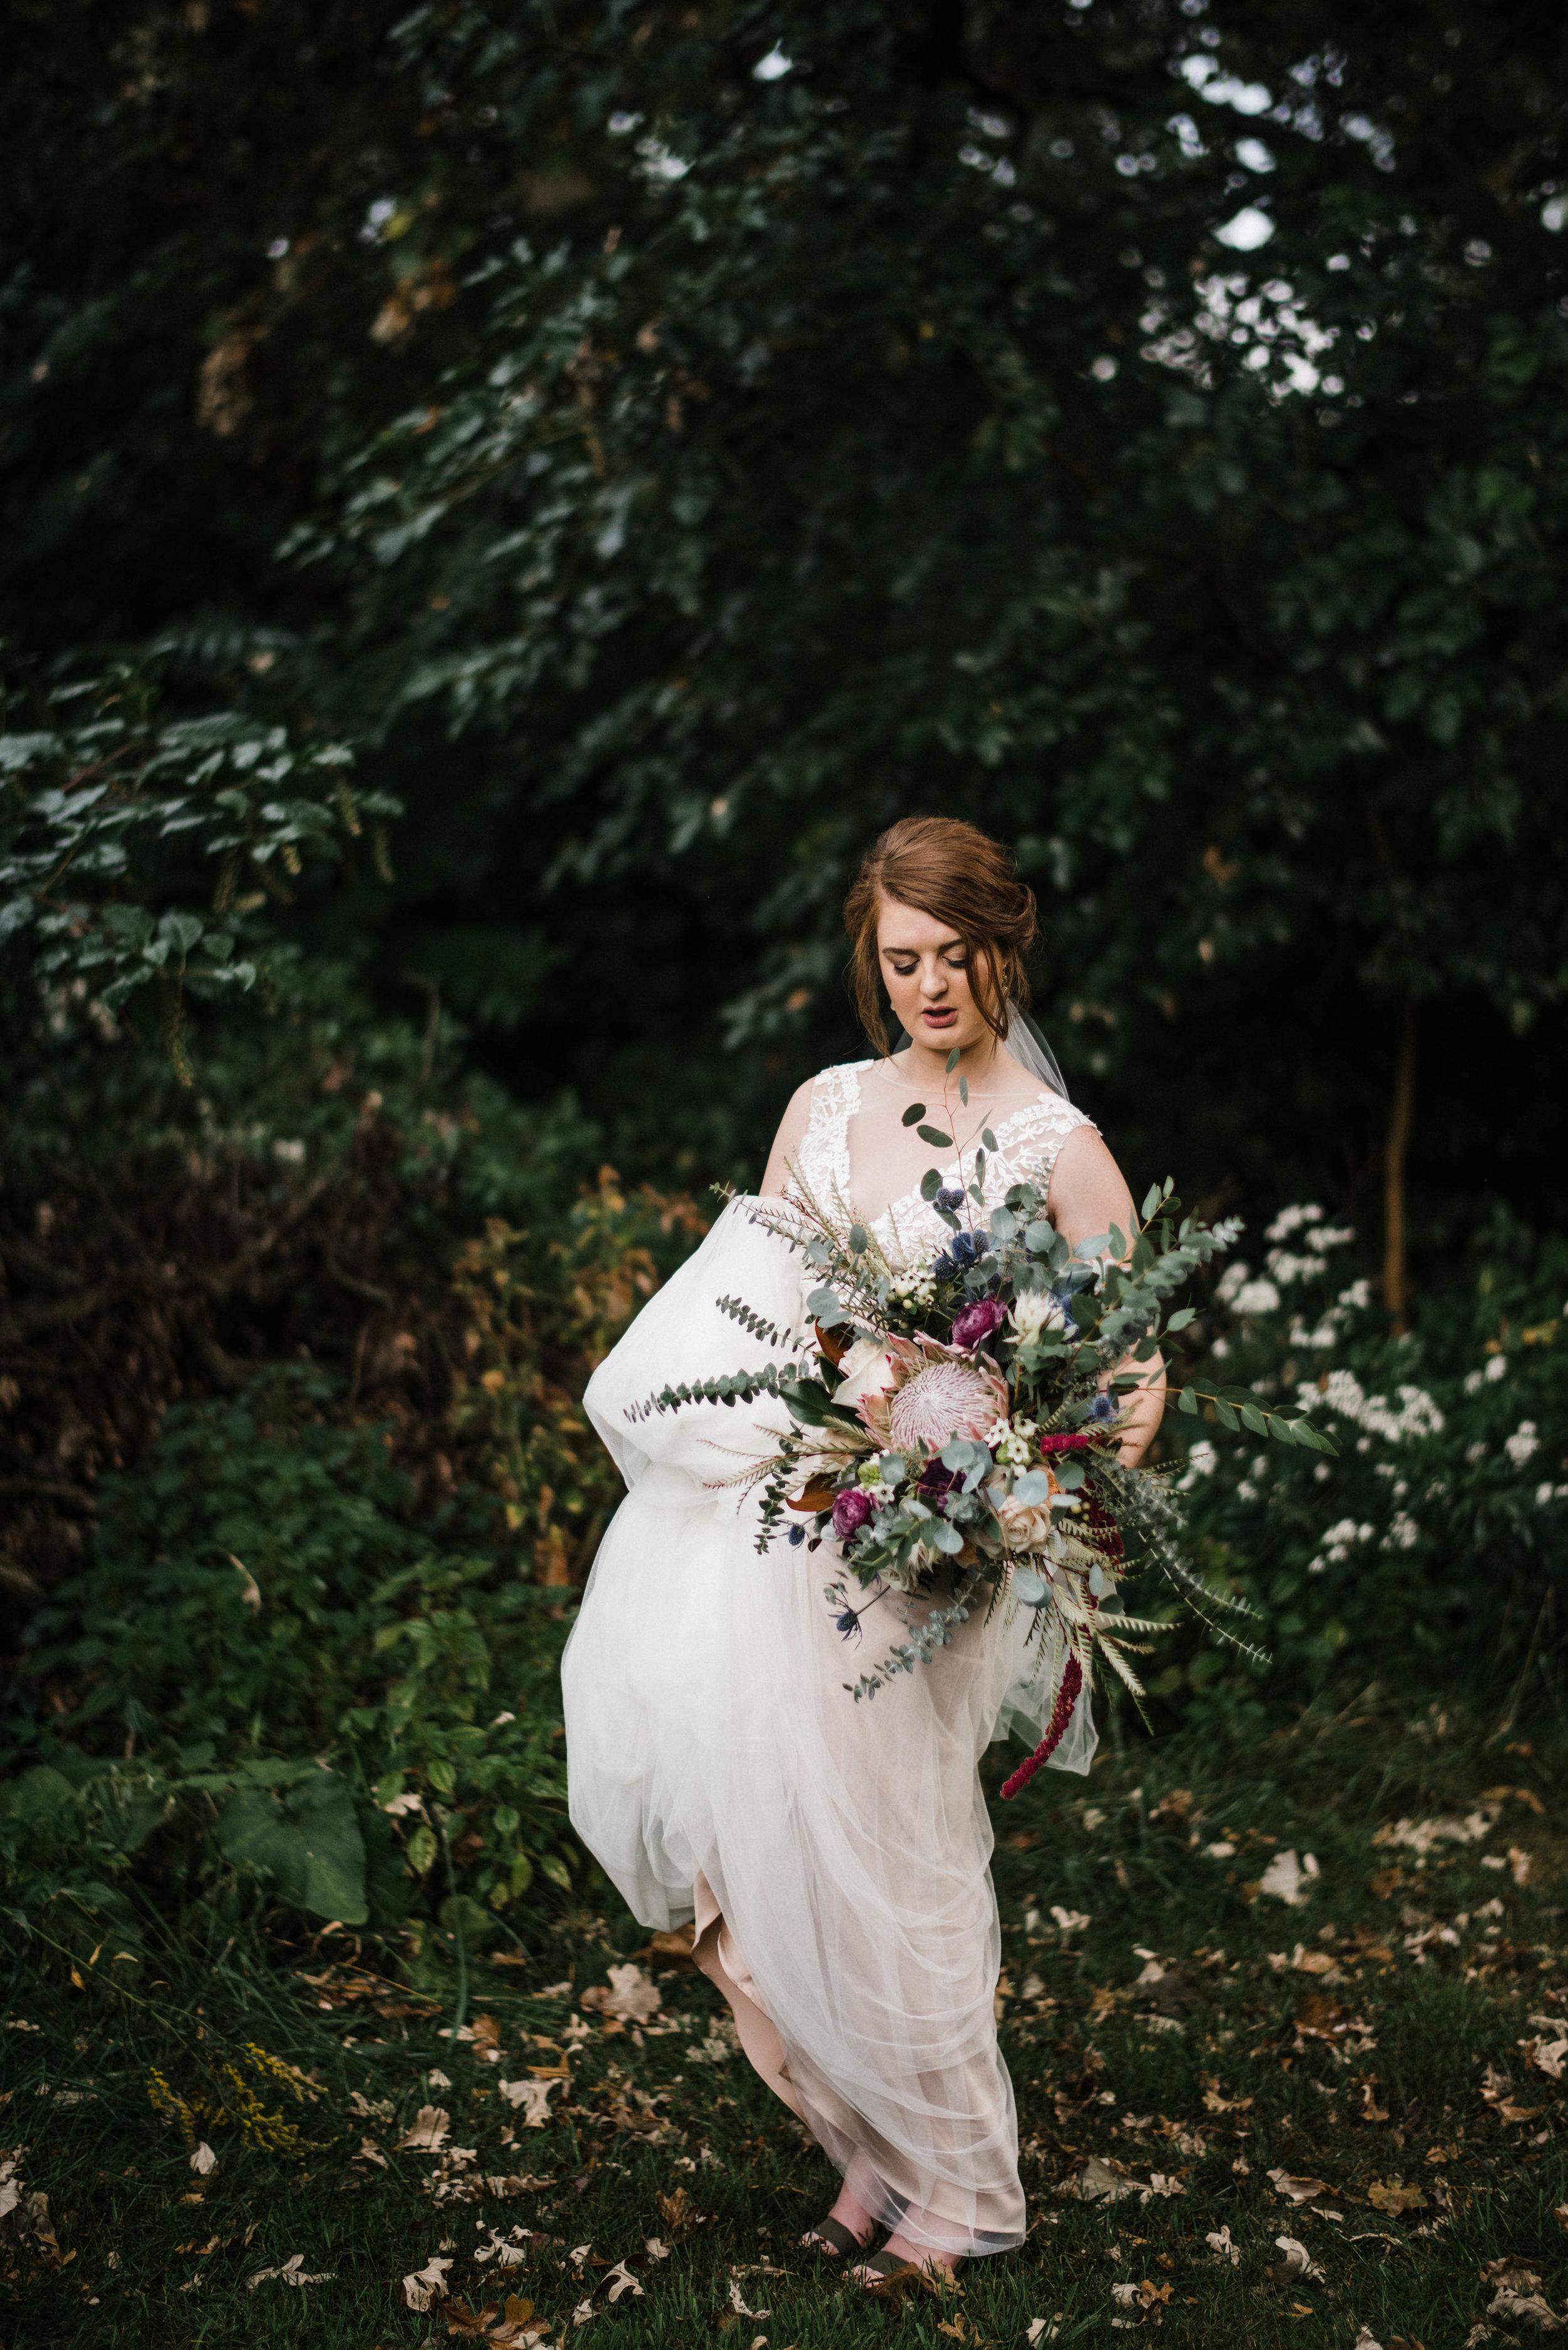 Romantic Wedding Bouquet and Bride Portrait